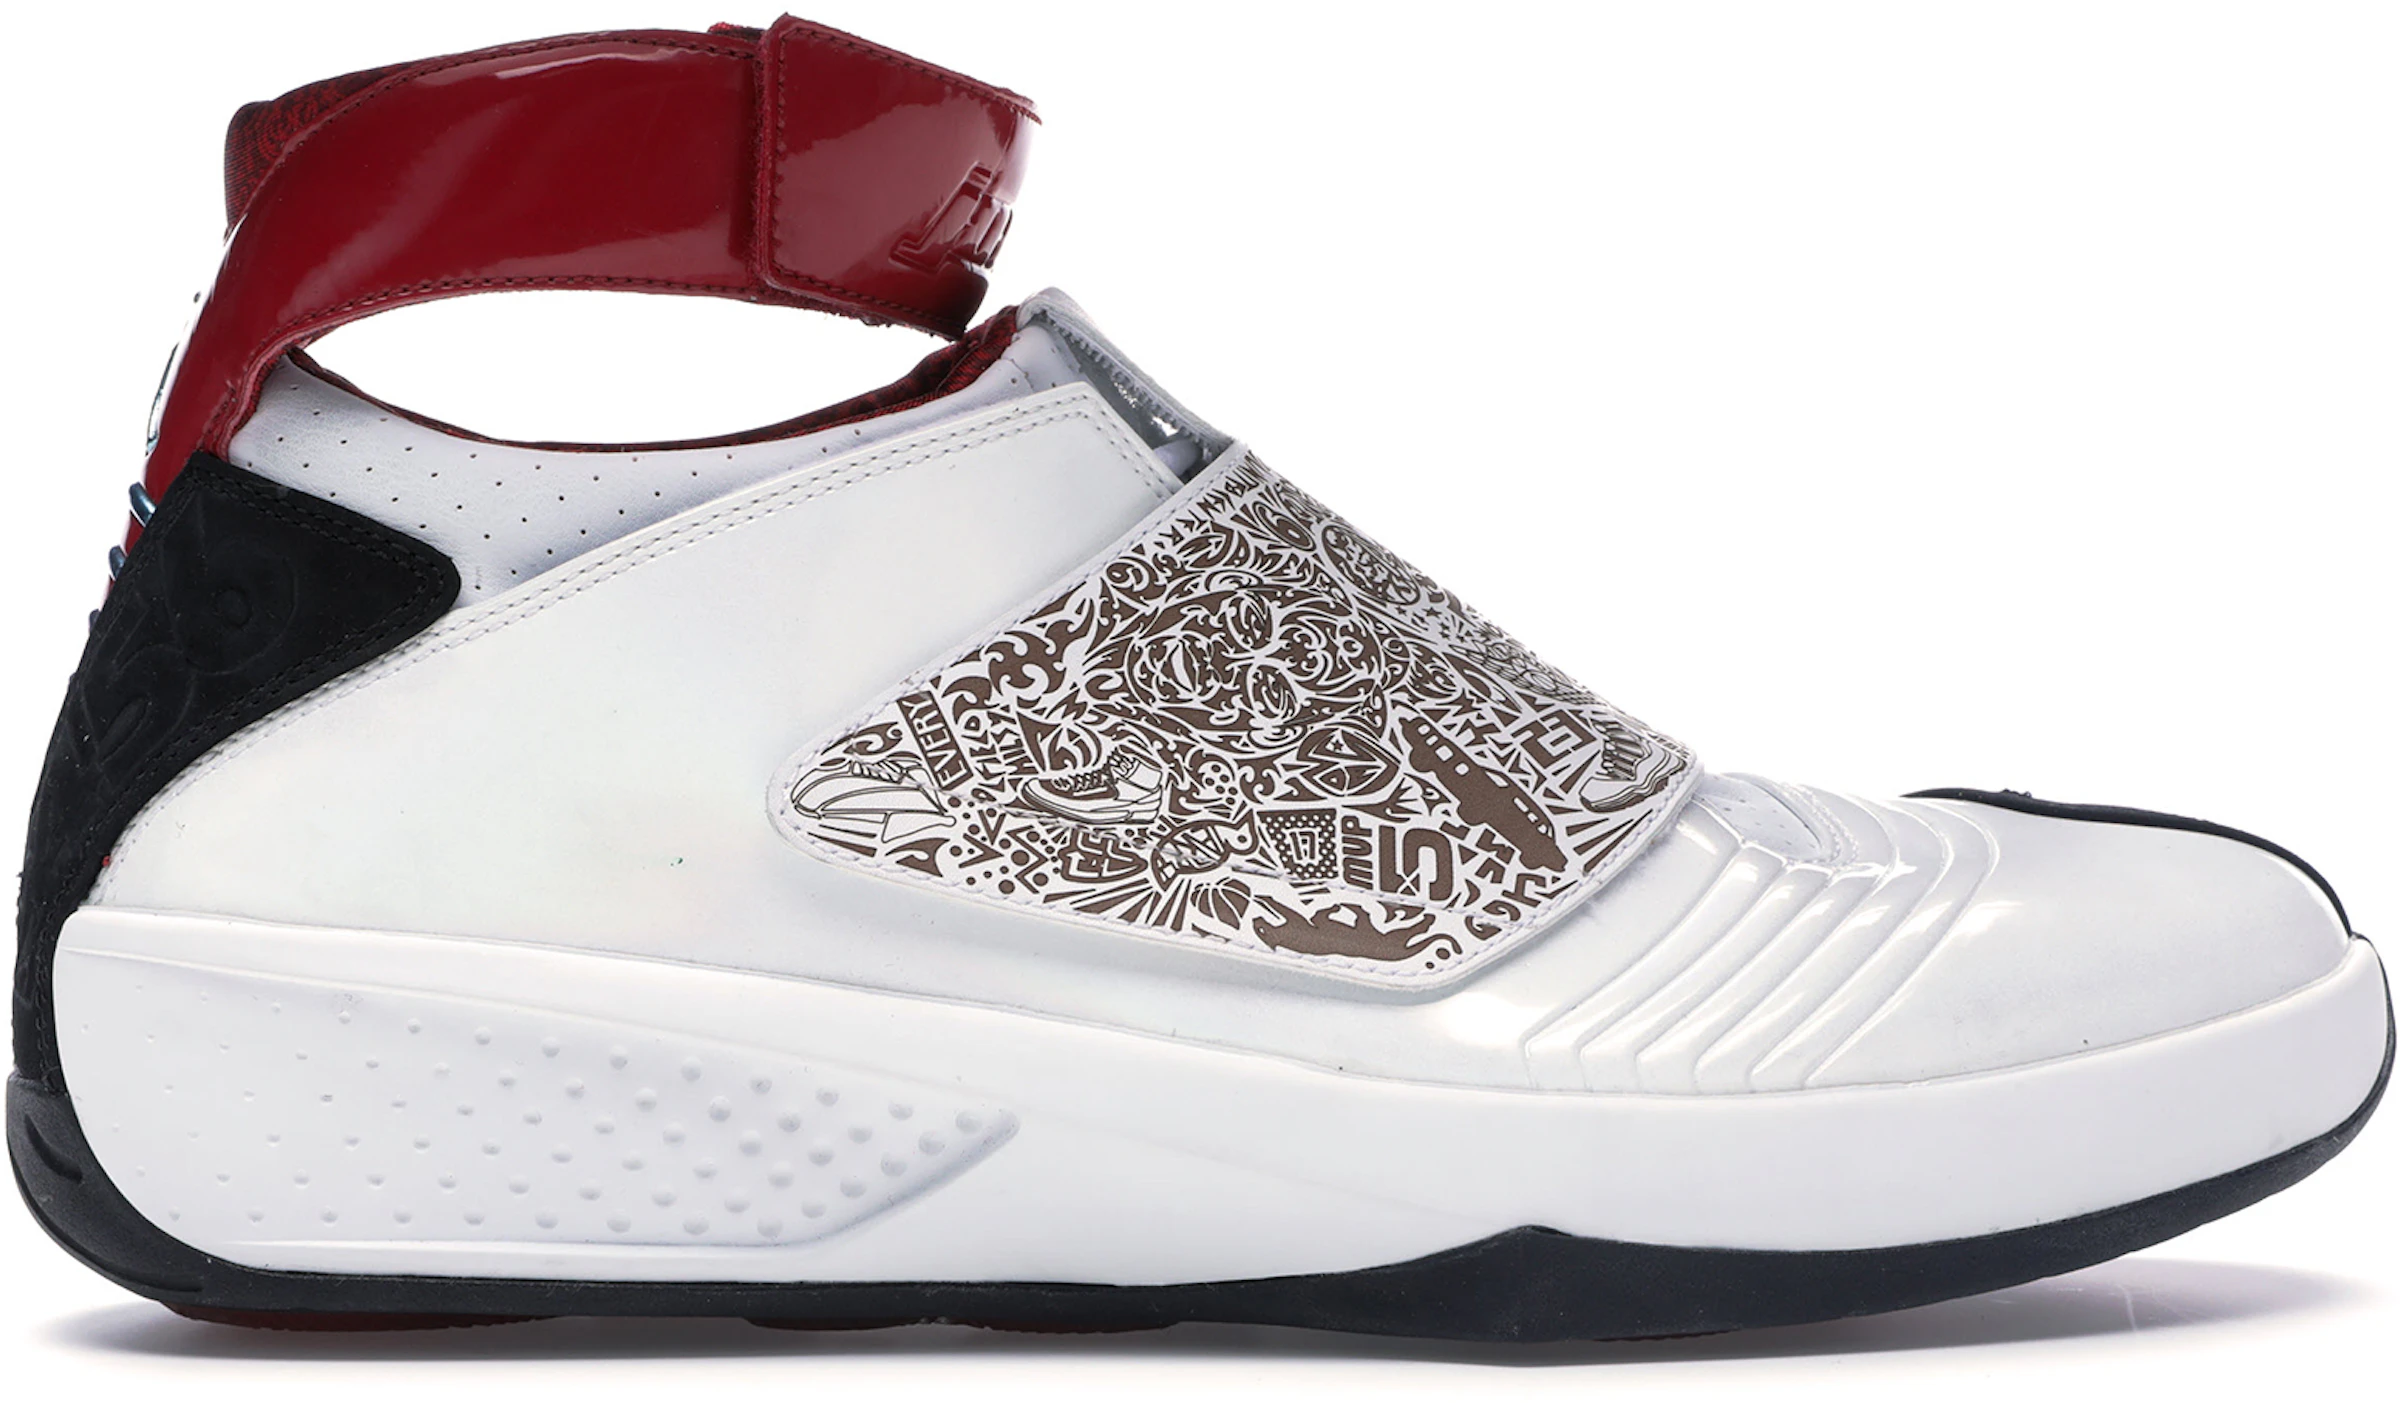 Compra Jordan 20 Calzado y sneakers nuevos - StockX